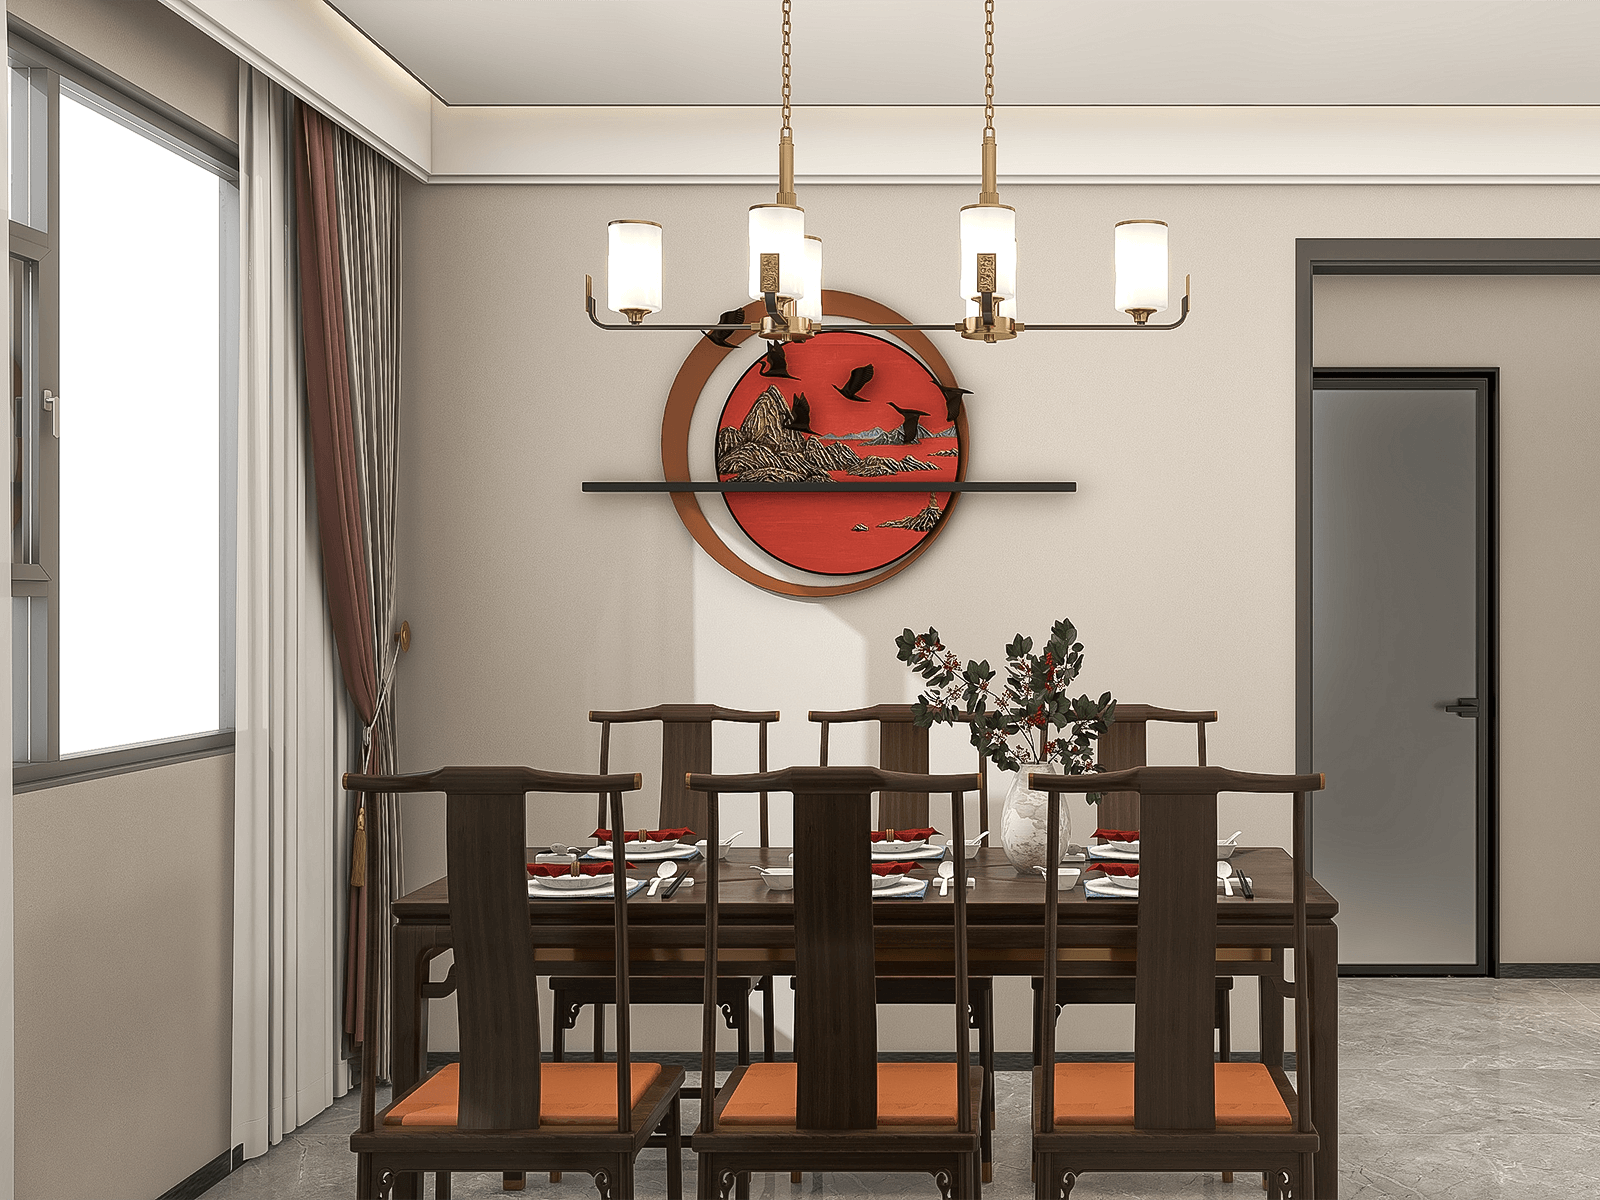 长条木桌和太师椅的搭配把新中式诠释得恰到好处。墙上的精致挂架也是客厅同款的山水鸟鸣风格。金属感的吊灯，选择中式圆柱灯，看上去和谐美观。